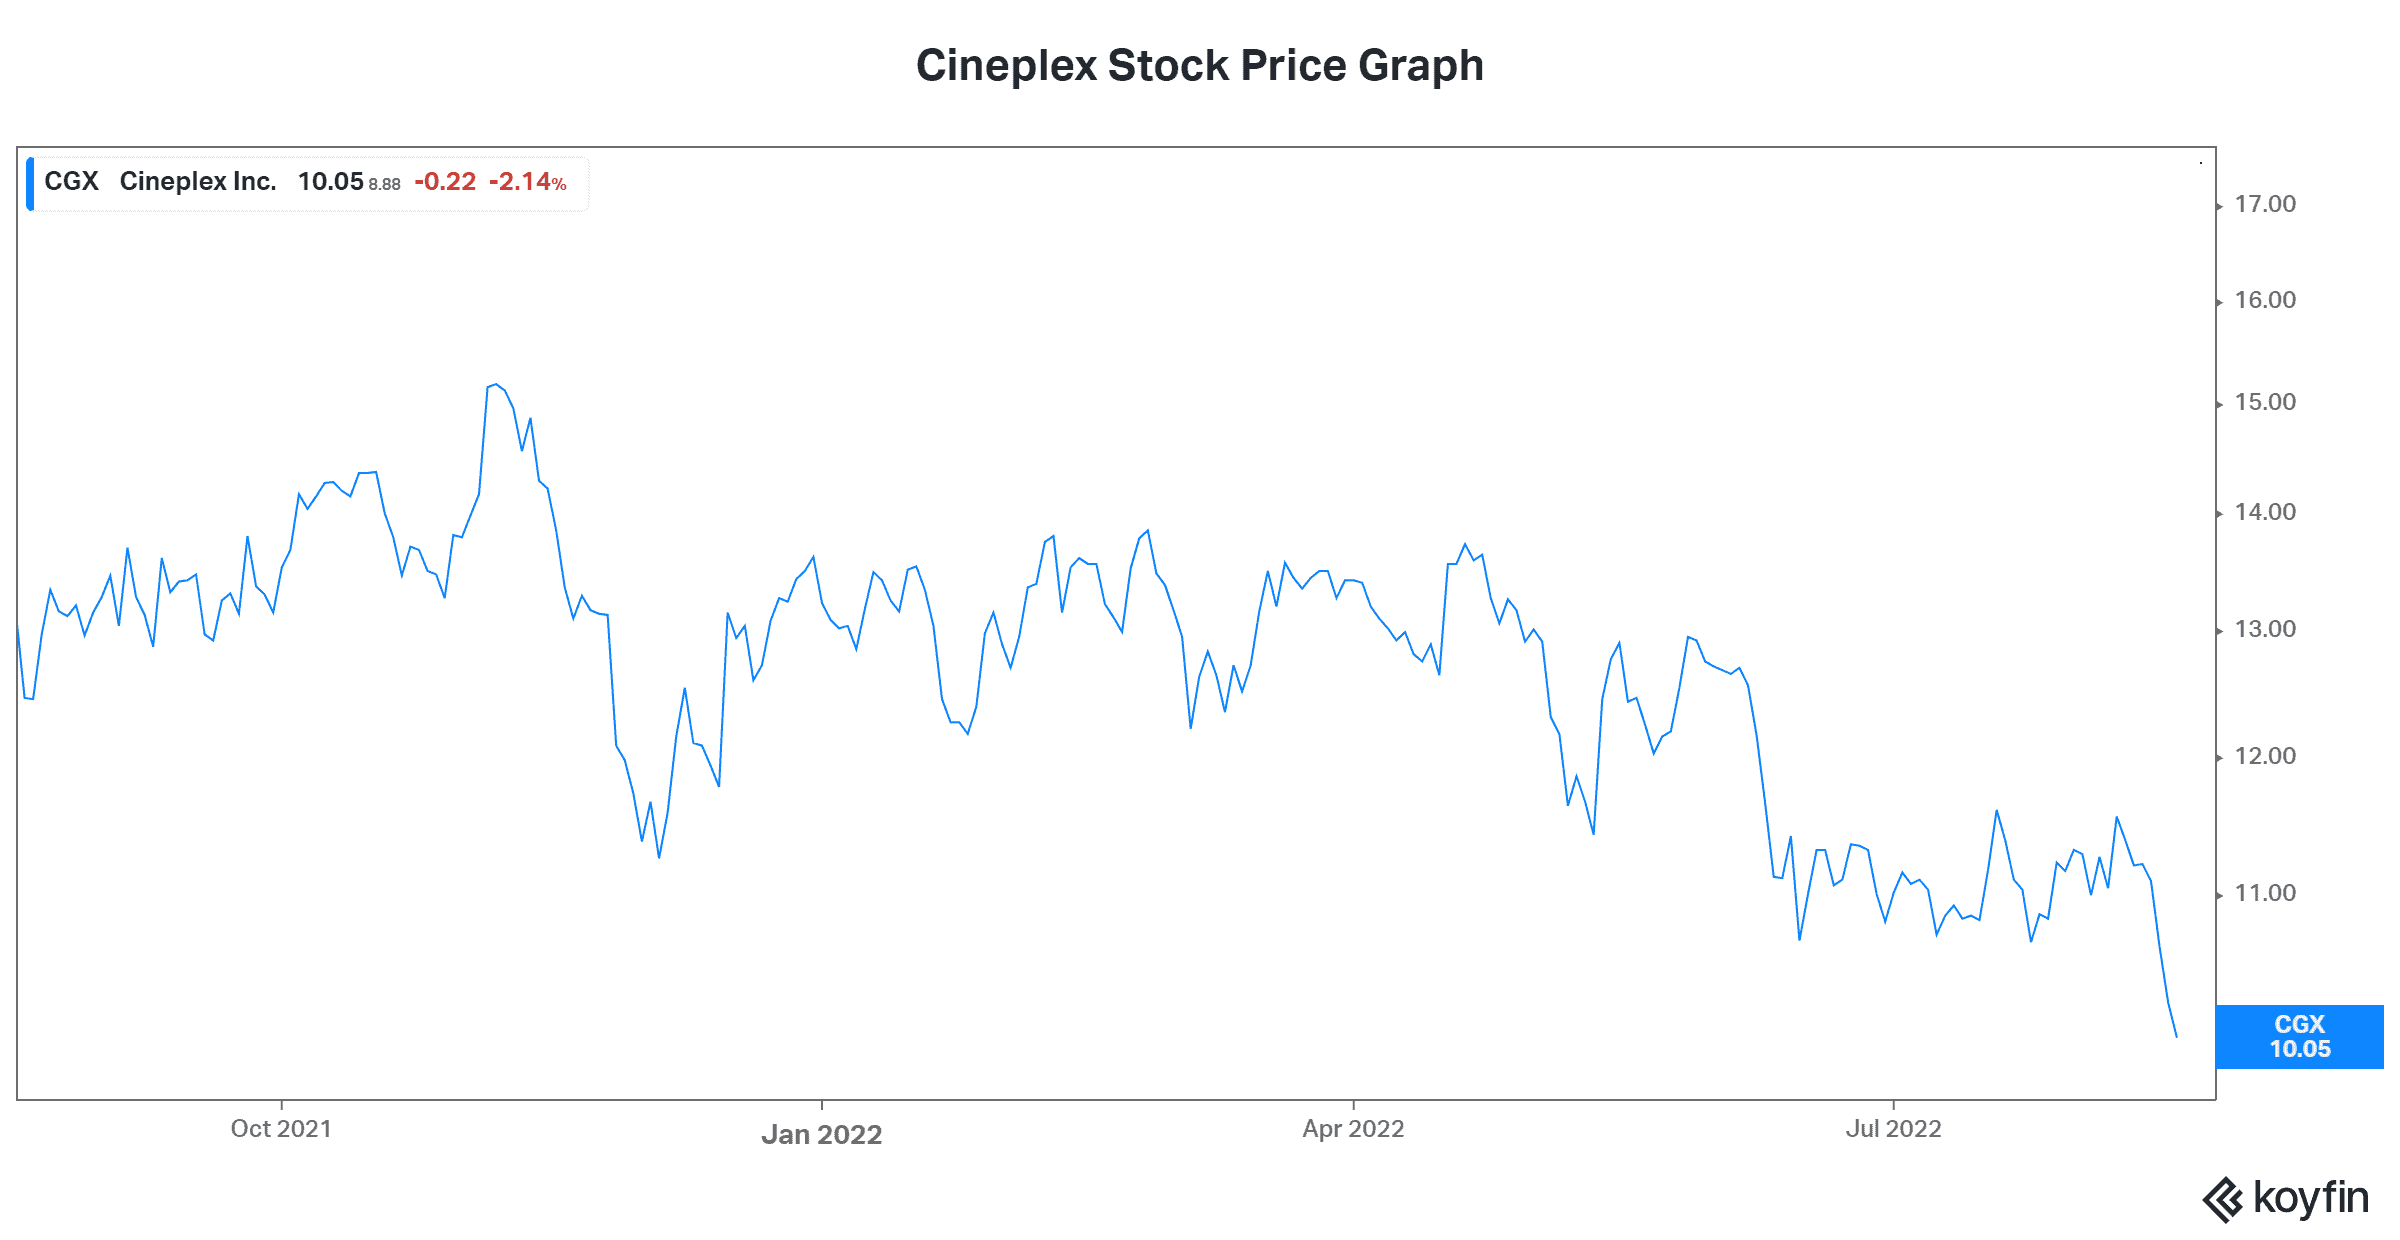 Cineplex Stock Price